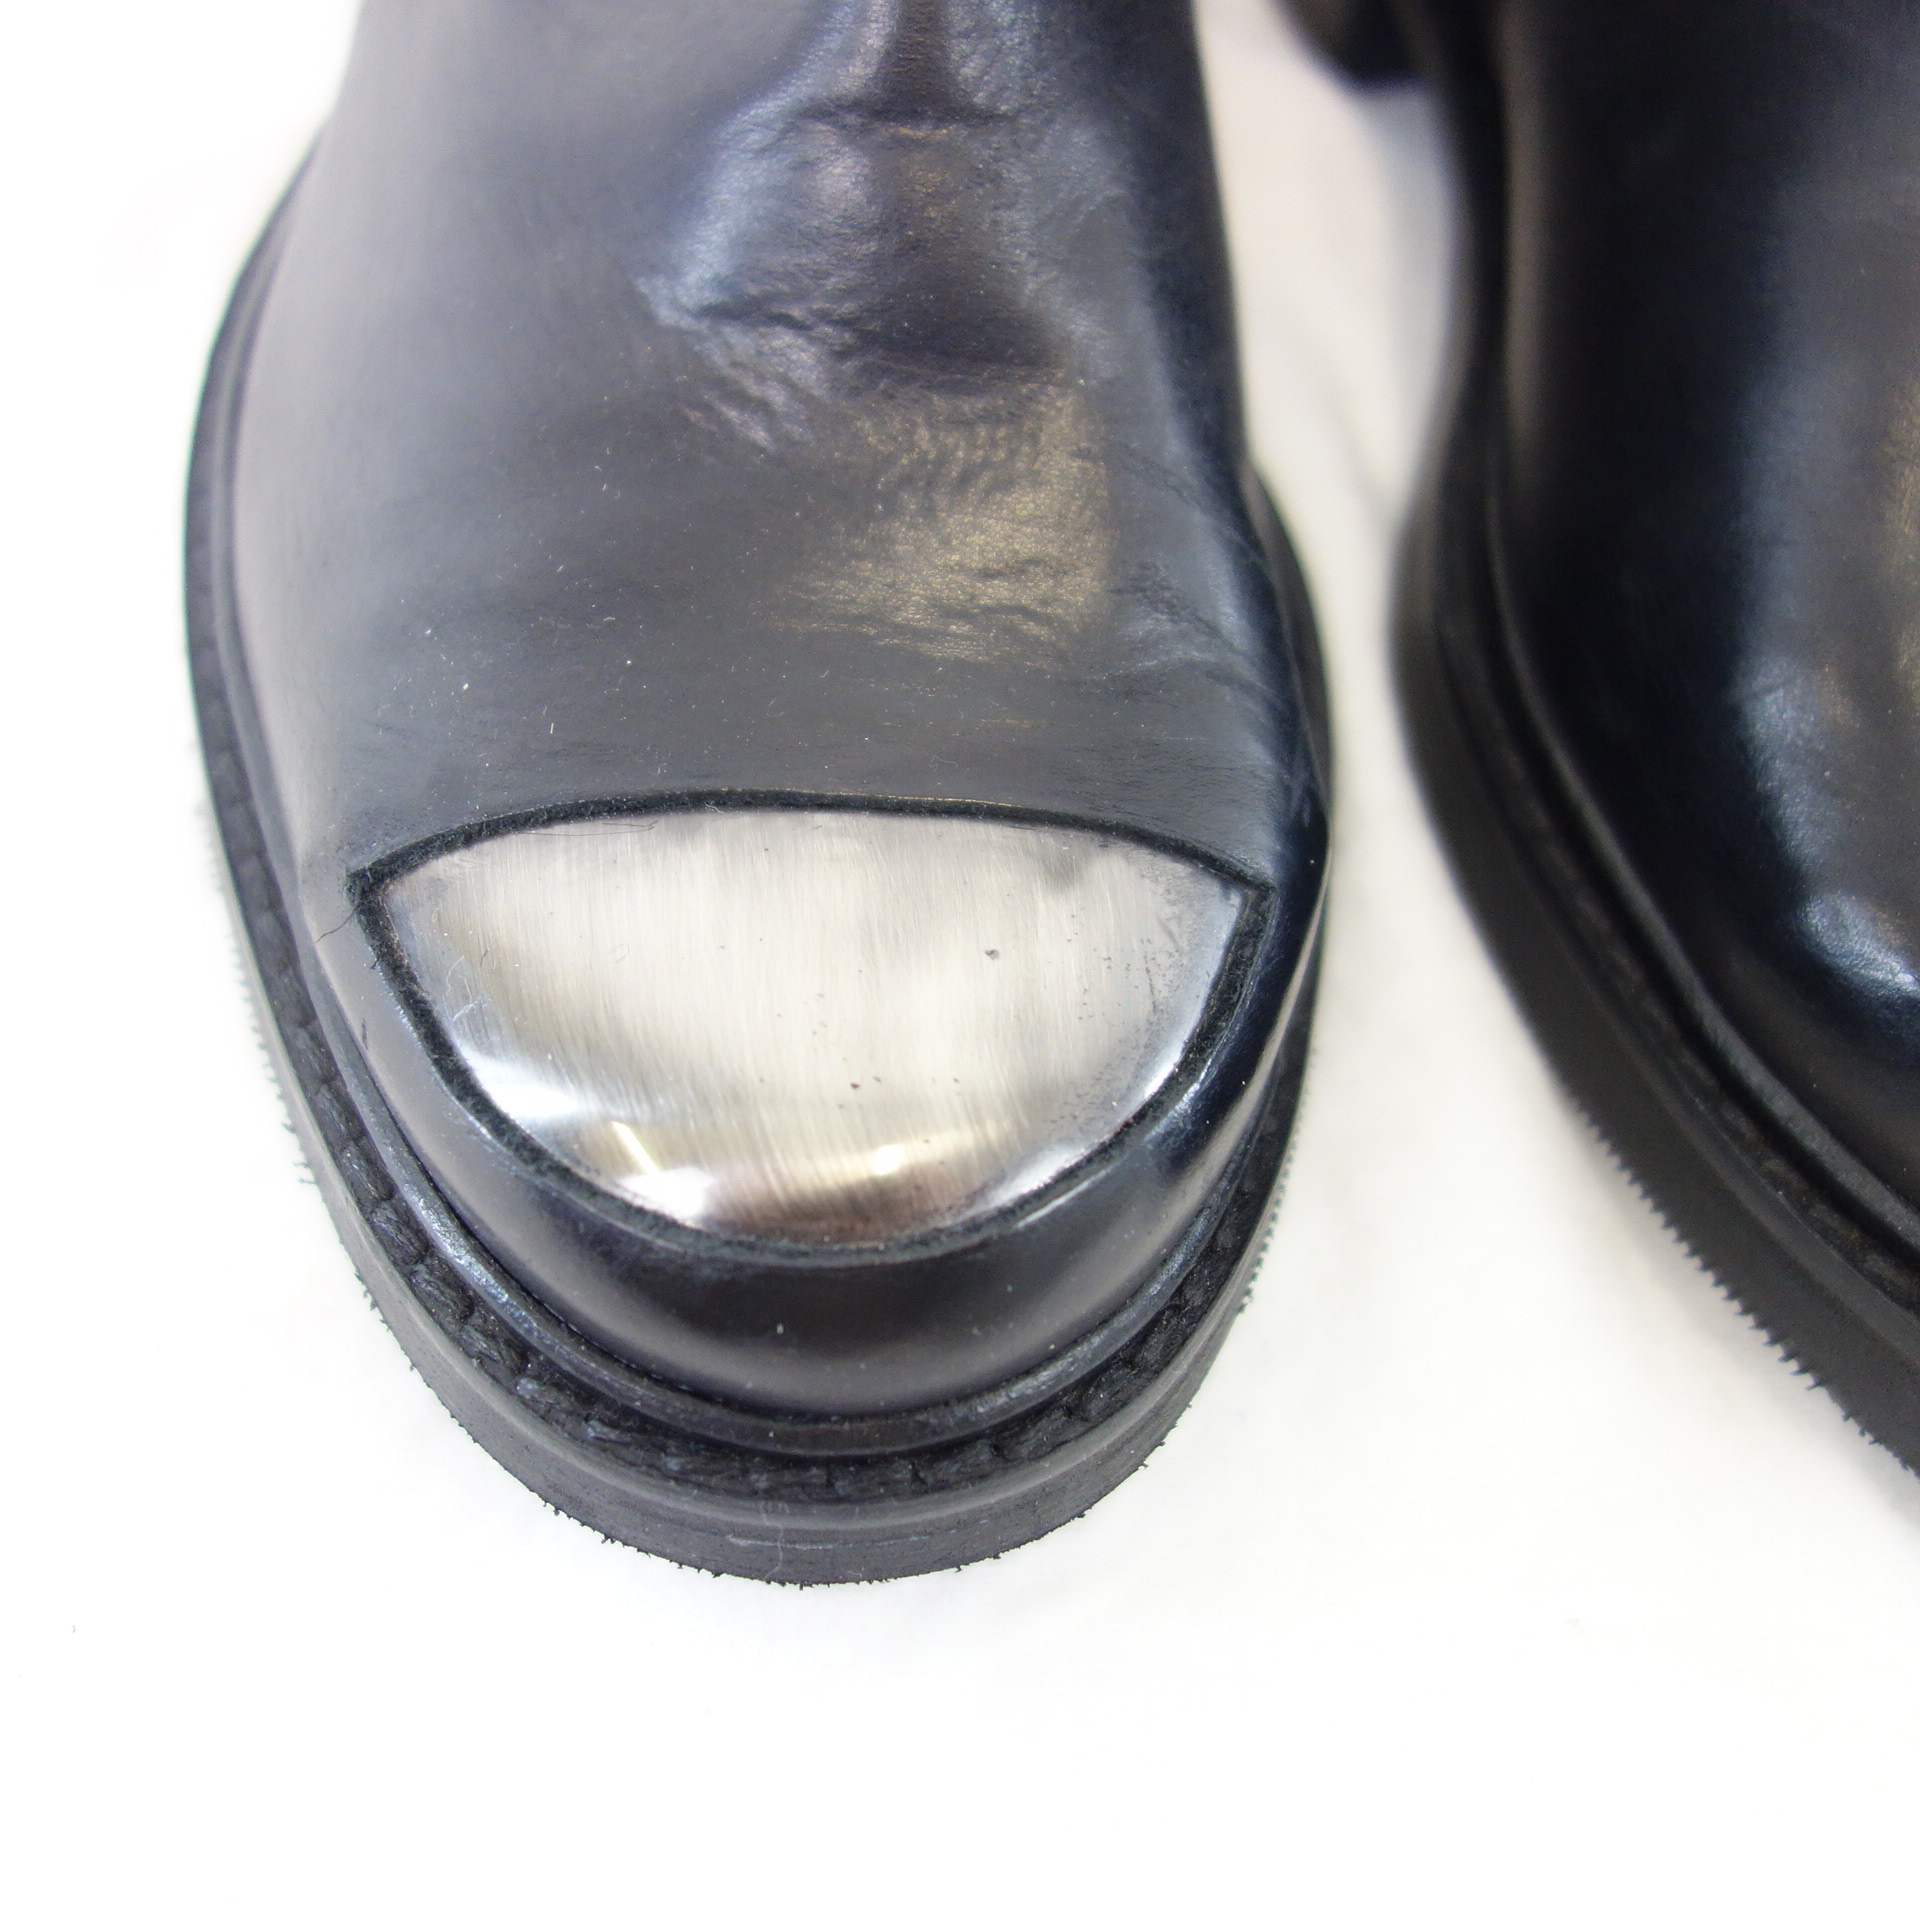 BUKELA Damen Schuhe Stiefel Stiefeletten Boots Leder Schwarz Größe 37